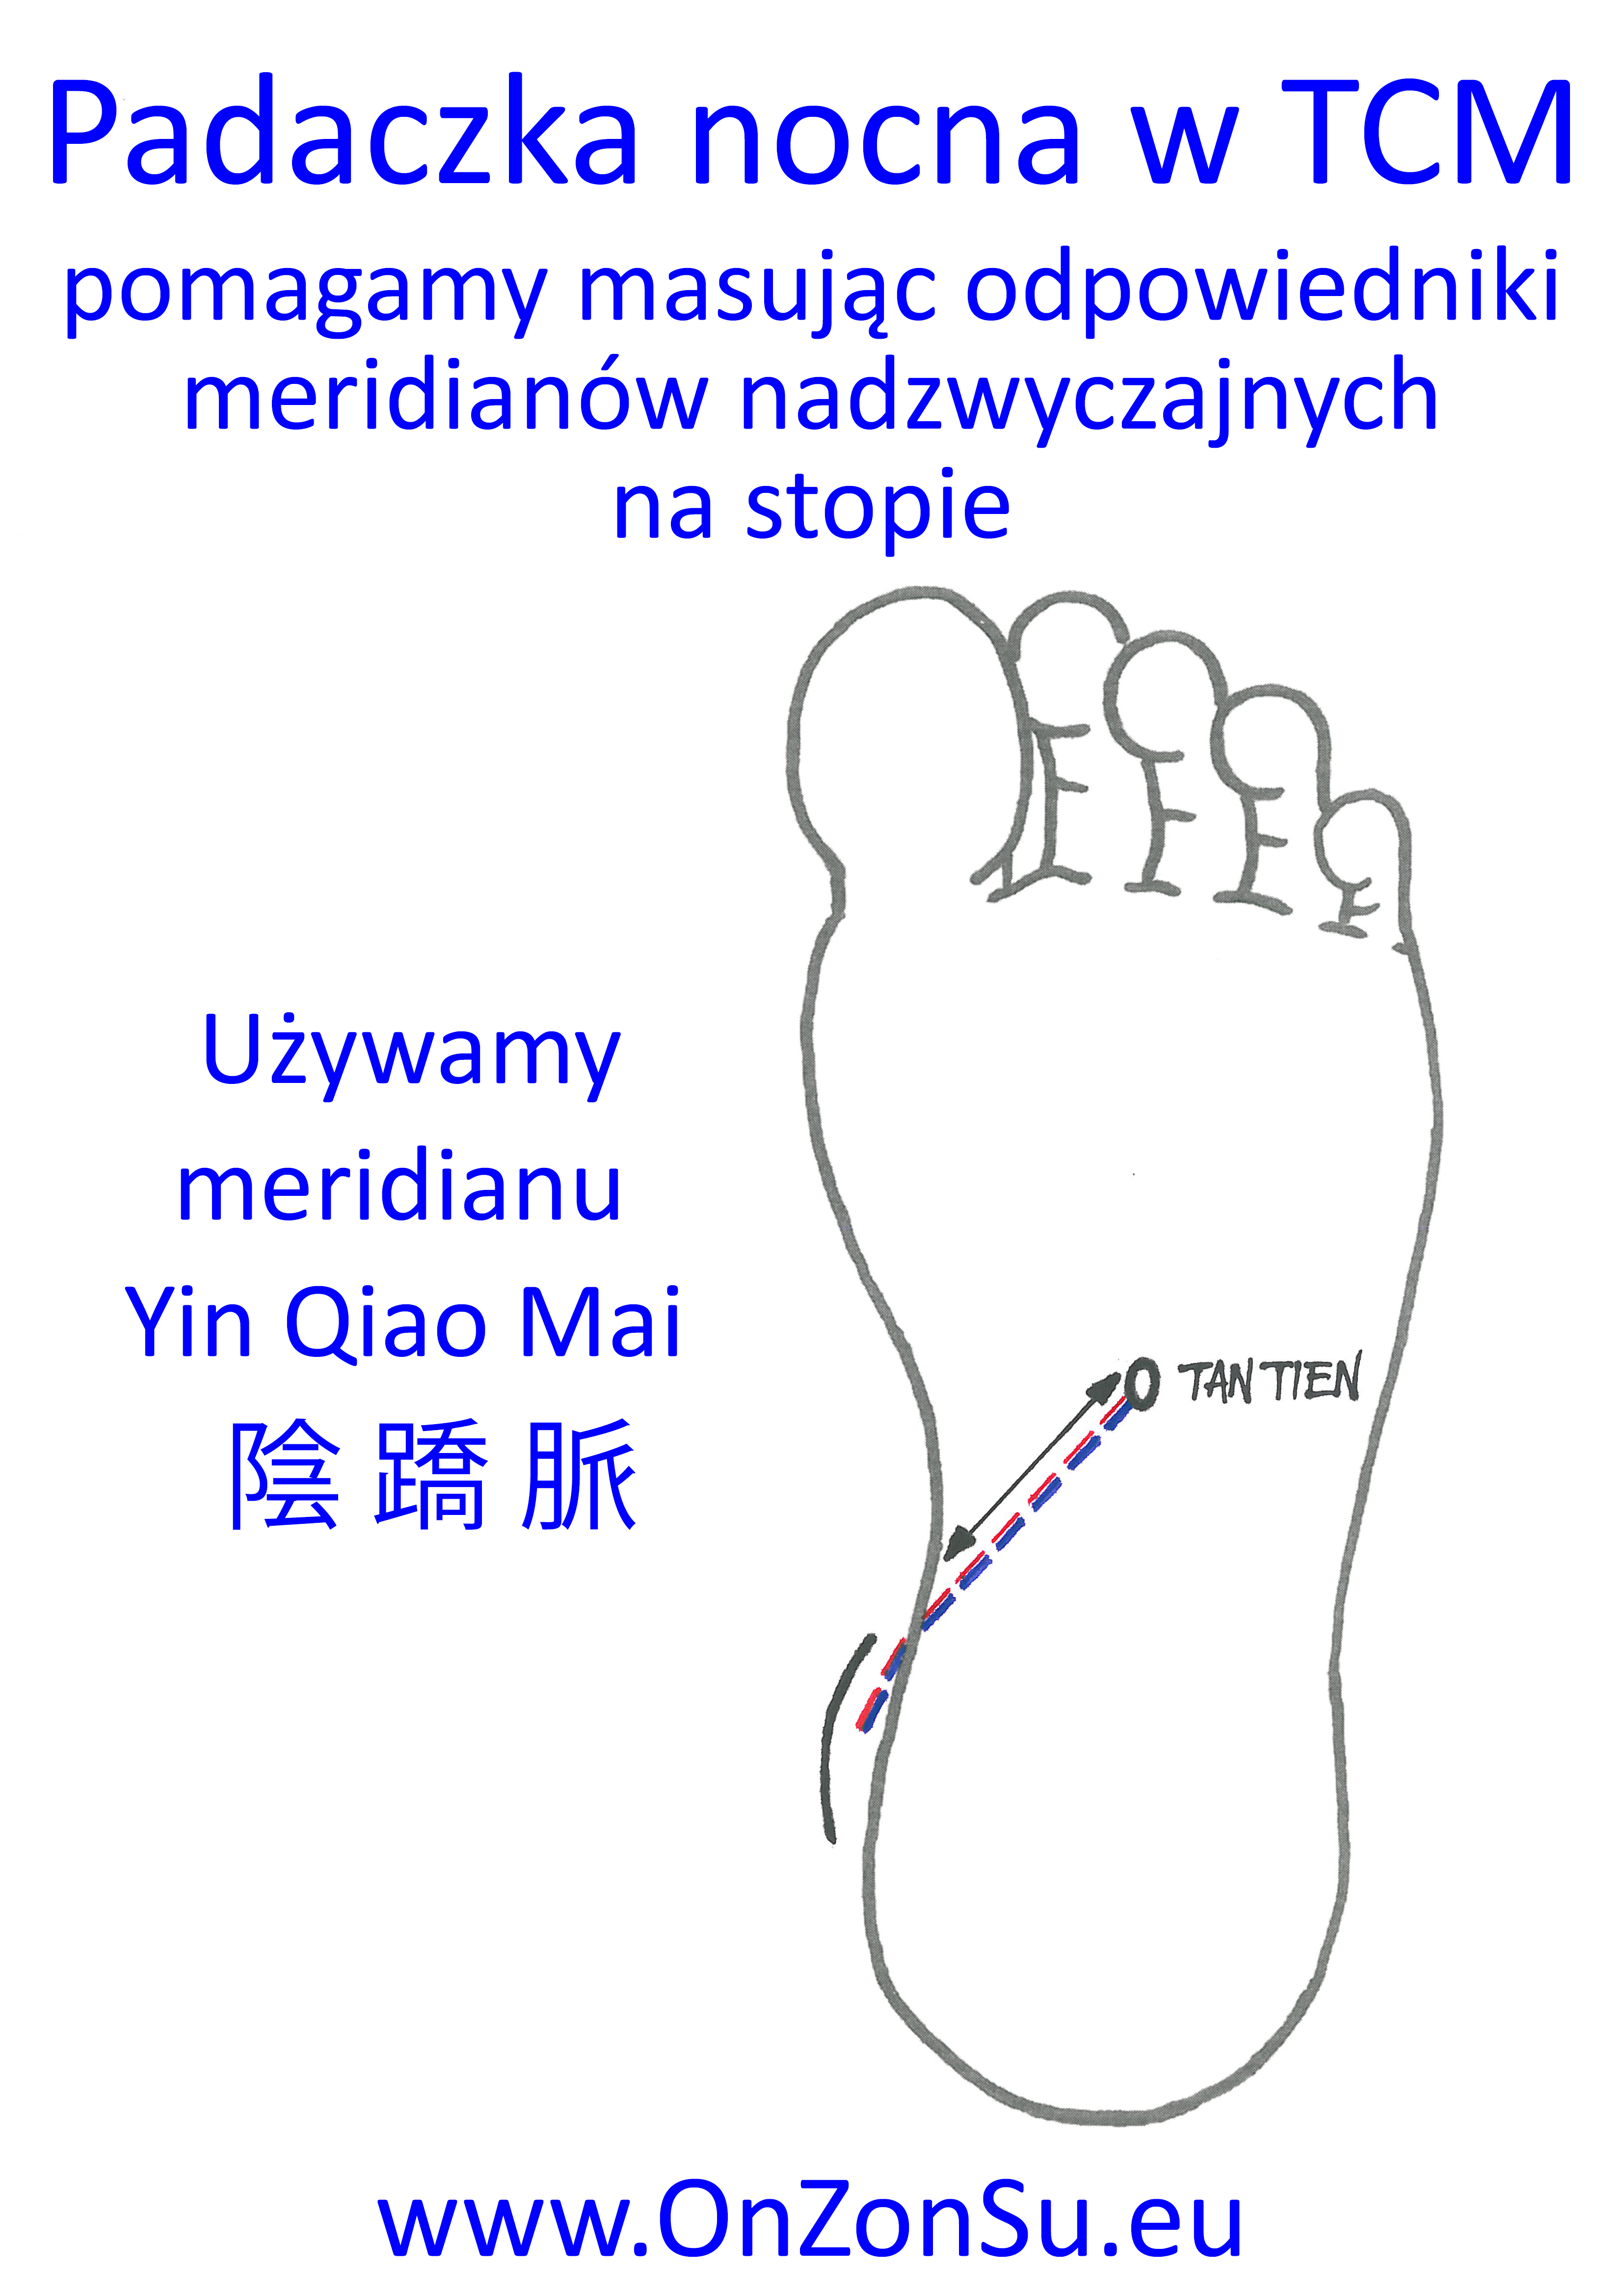 Kurs masażu stóp On Zon Su, Szkolenia refleksologii stóp - Padaczka nocna - harmonizujemy meridian nadzwyczajny Yin Qiao Mai 陰 蹻 脈 MEM.jpg